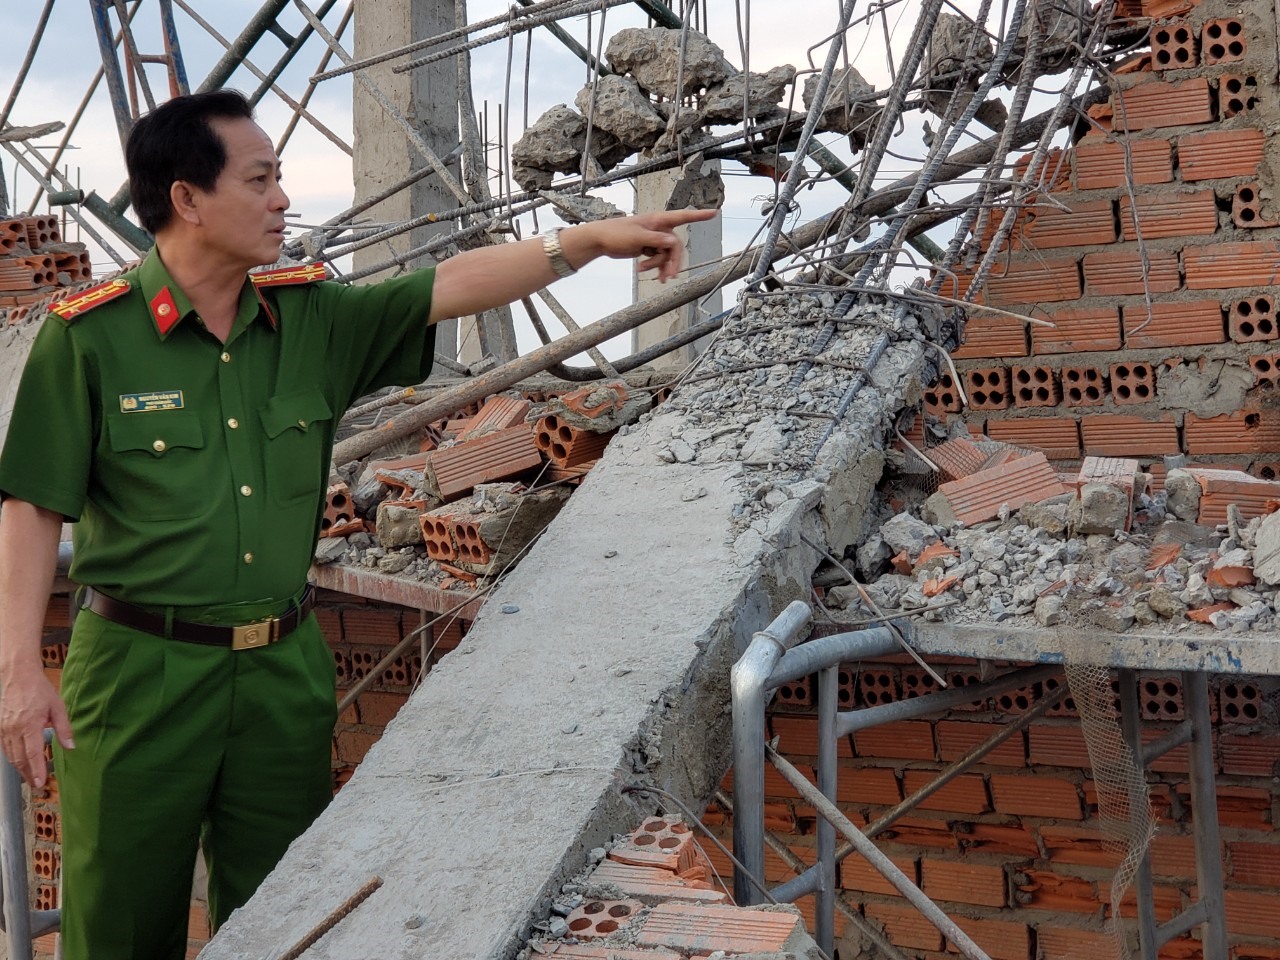 Đại tá Nguyễn Văn Kim, Thủ trưởng cơ quan cảnh sát điều tra Công an tỉnh Đồng Nai có mặt chỉ đạo hiện trường. Ảnh: Hà Anh Chiến